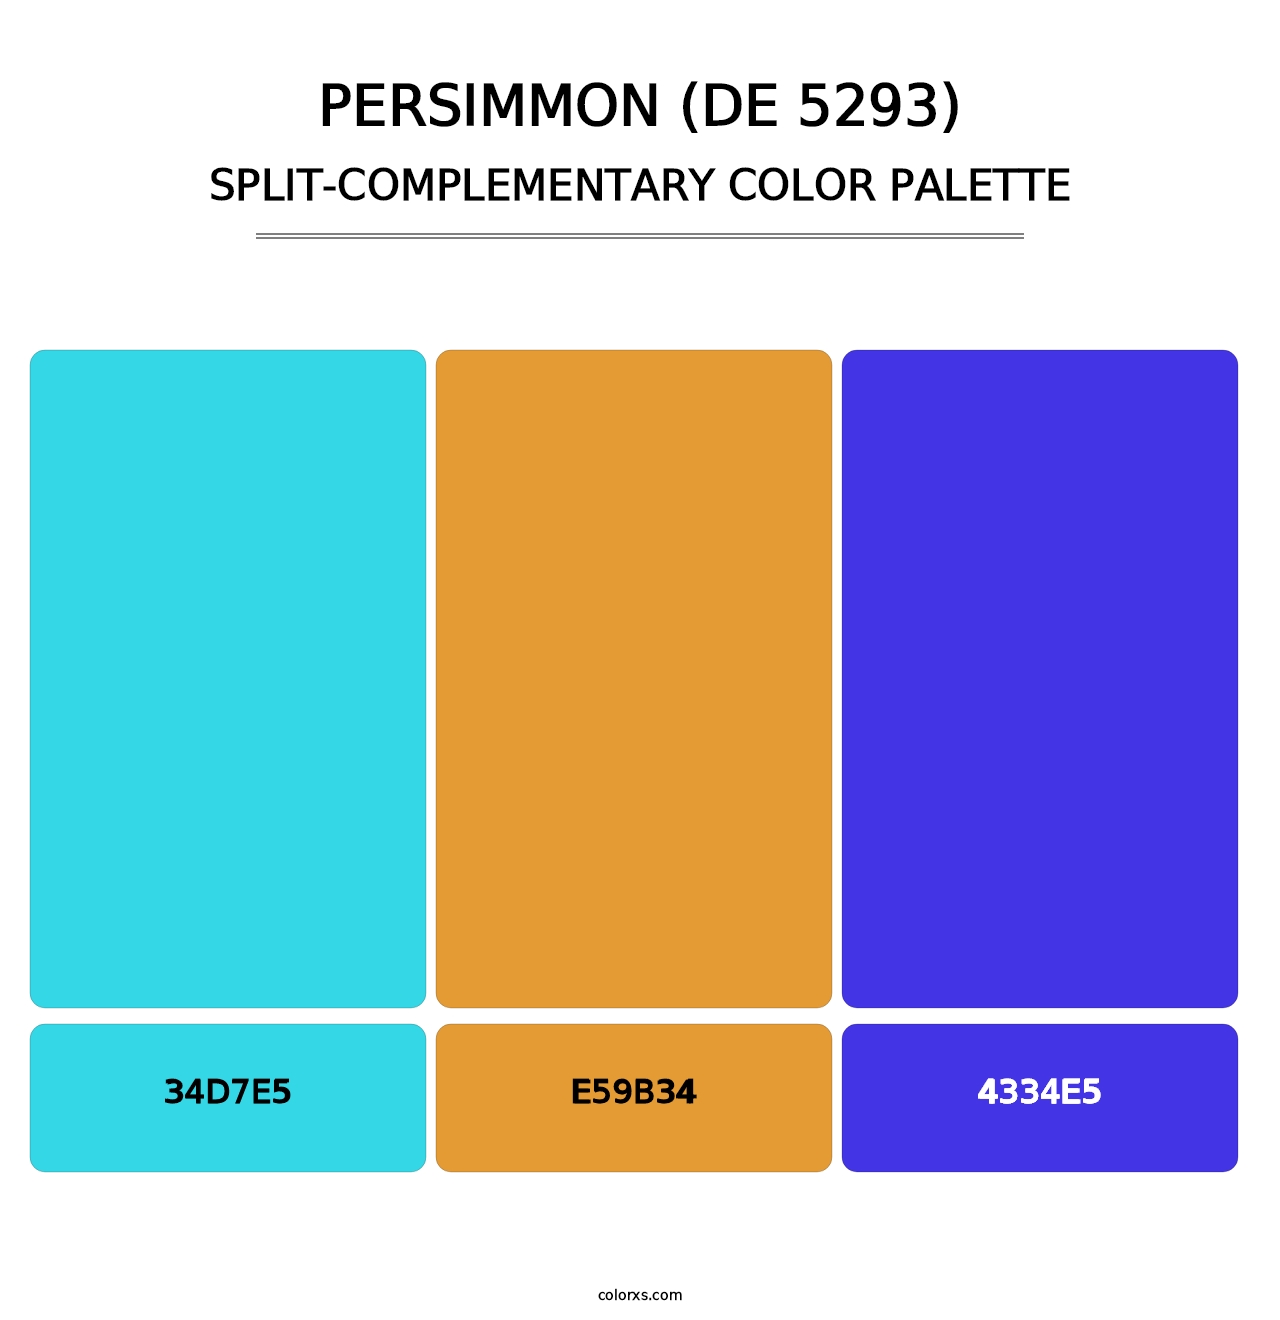 Persimmon (DE 5293) - Split-Complementary Color Palette